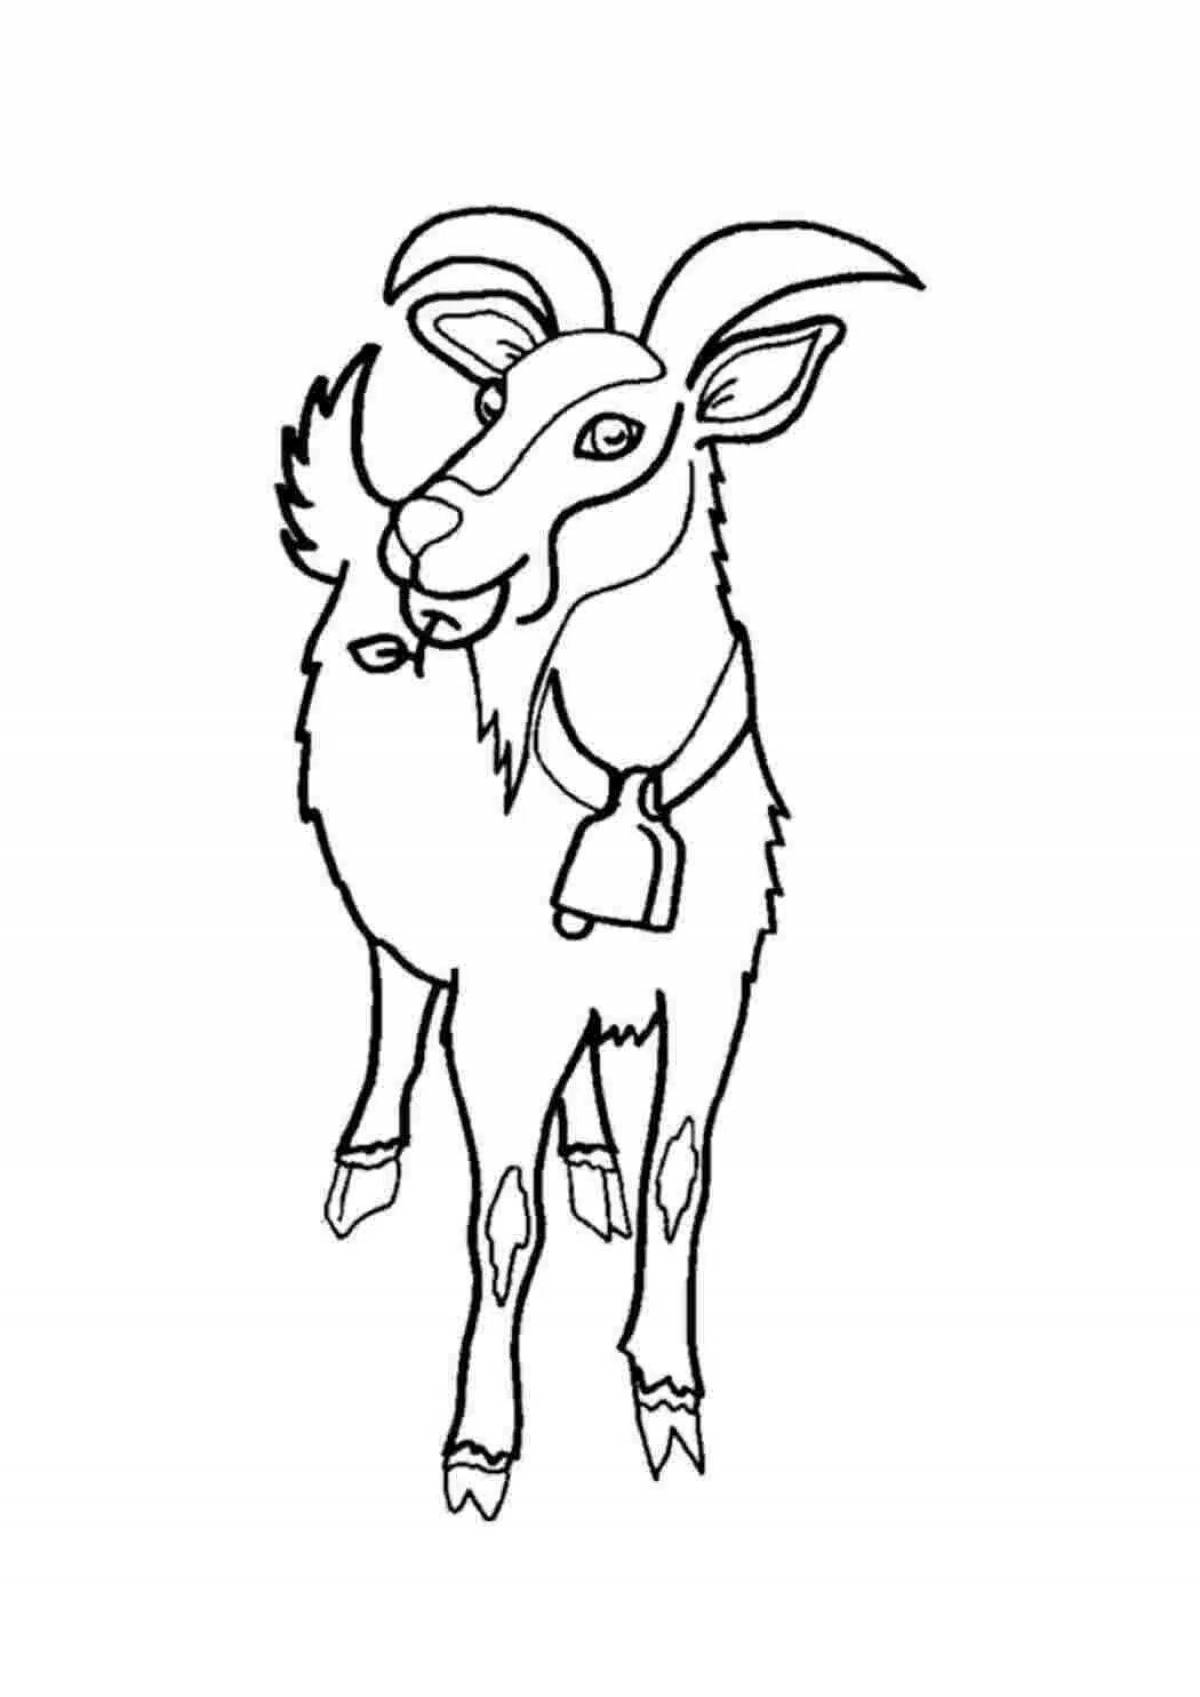 Как нарисовать козу